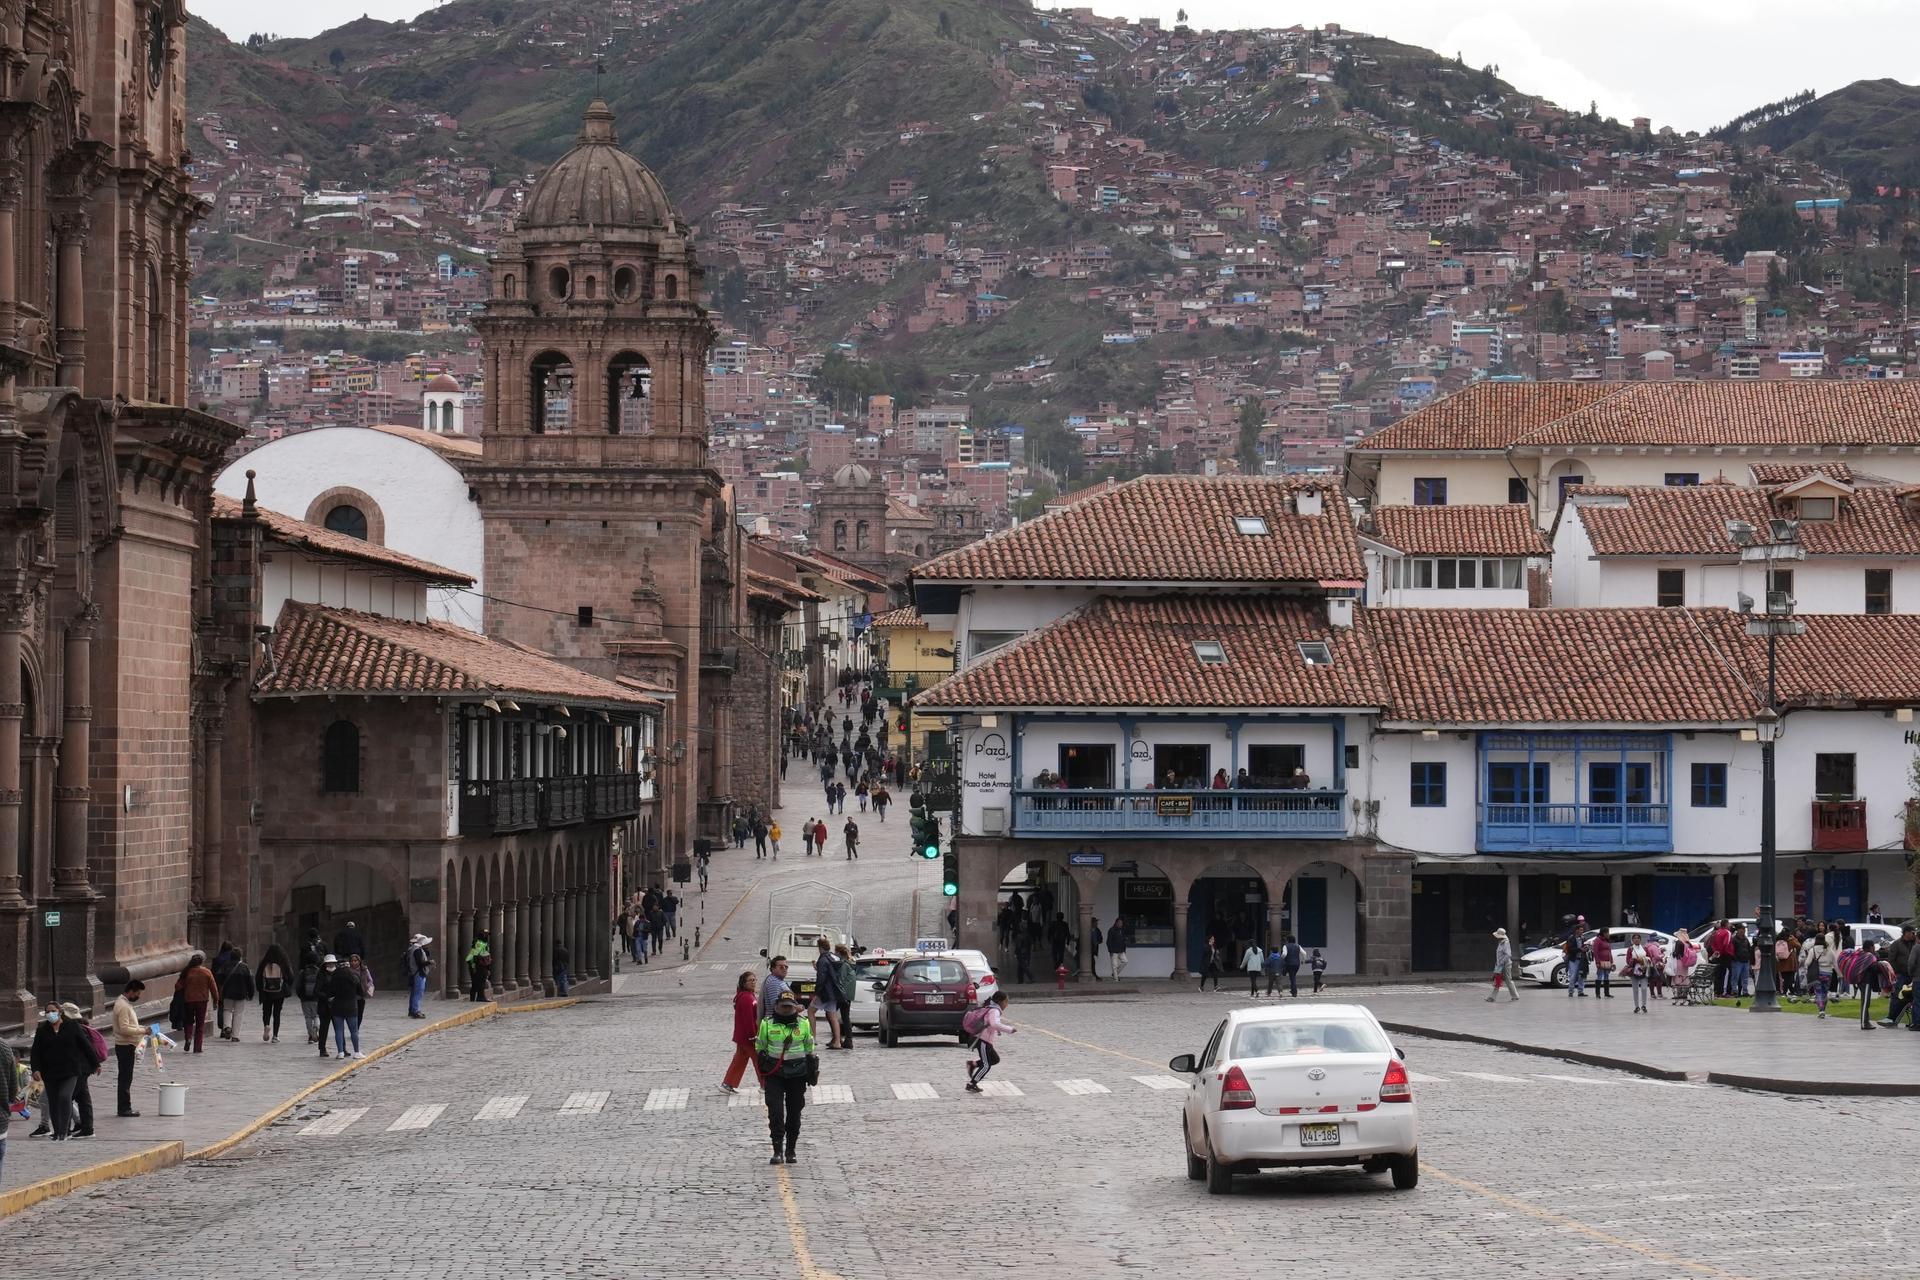 Cuzco is Peru's top tourism destination.